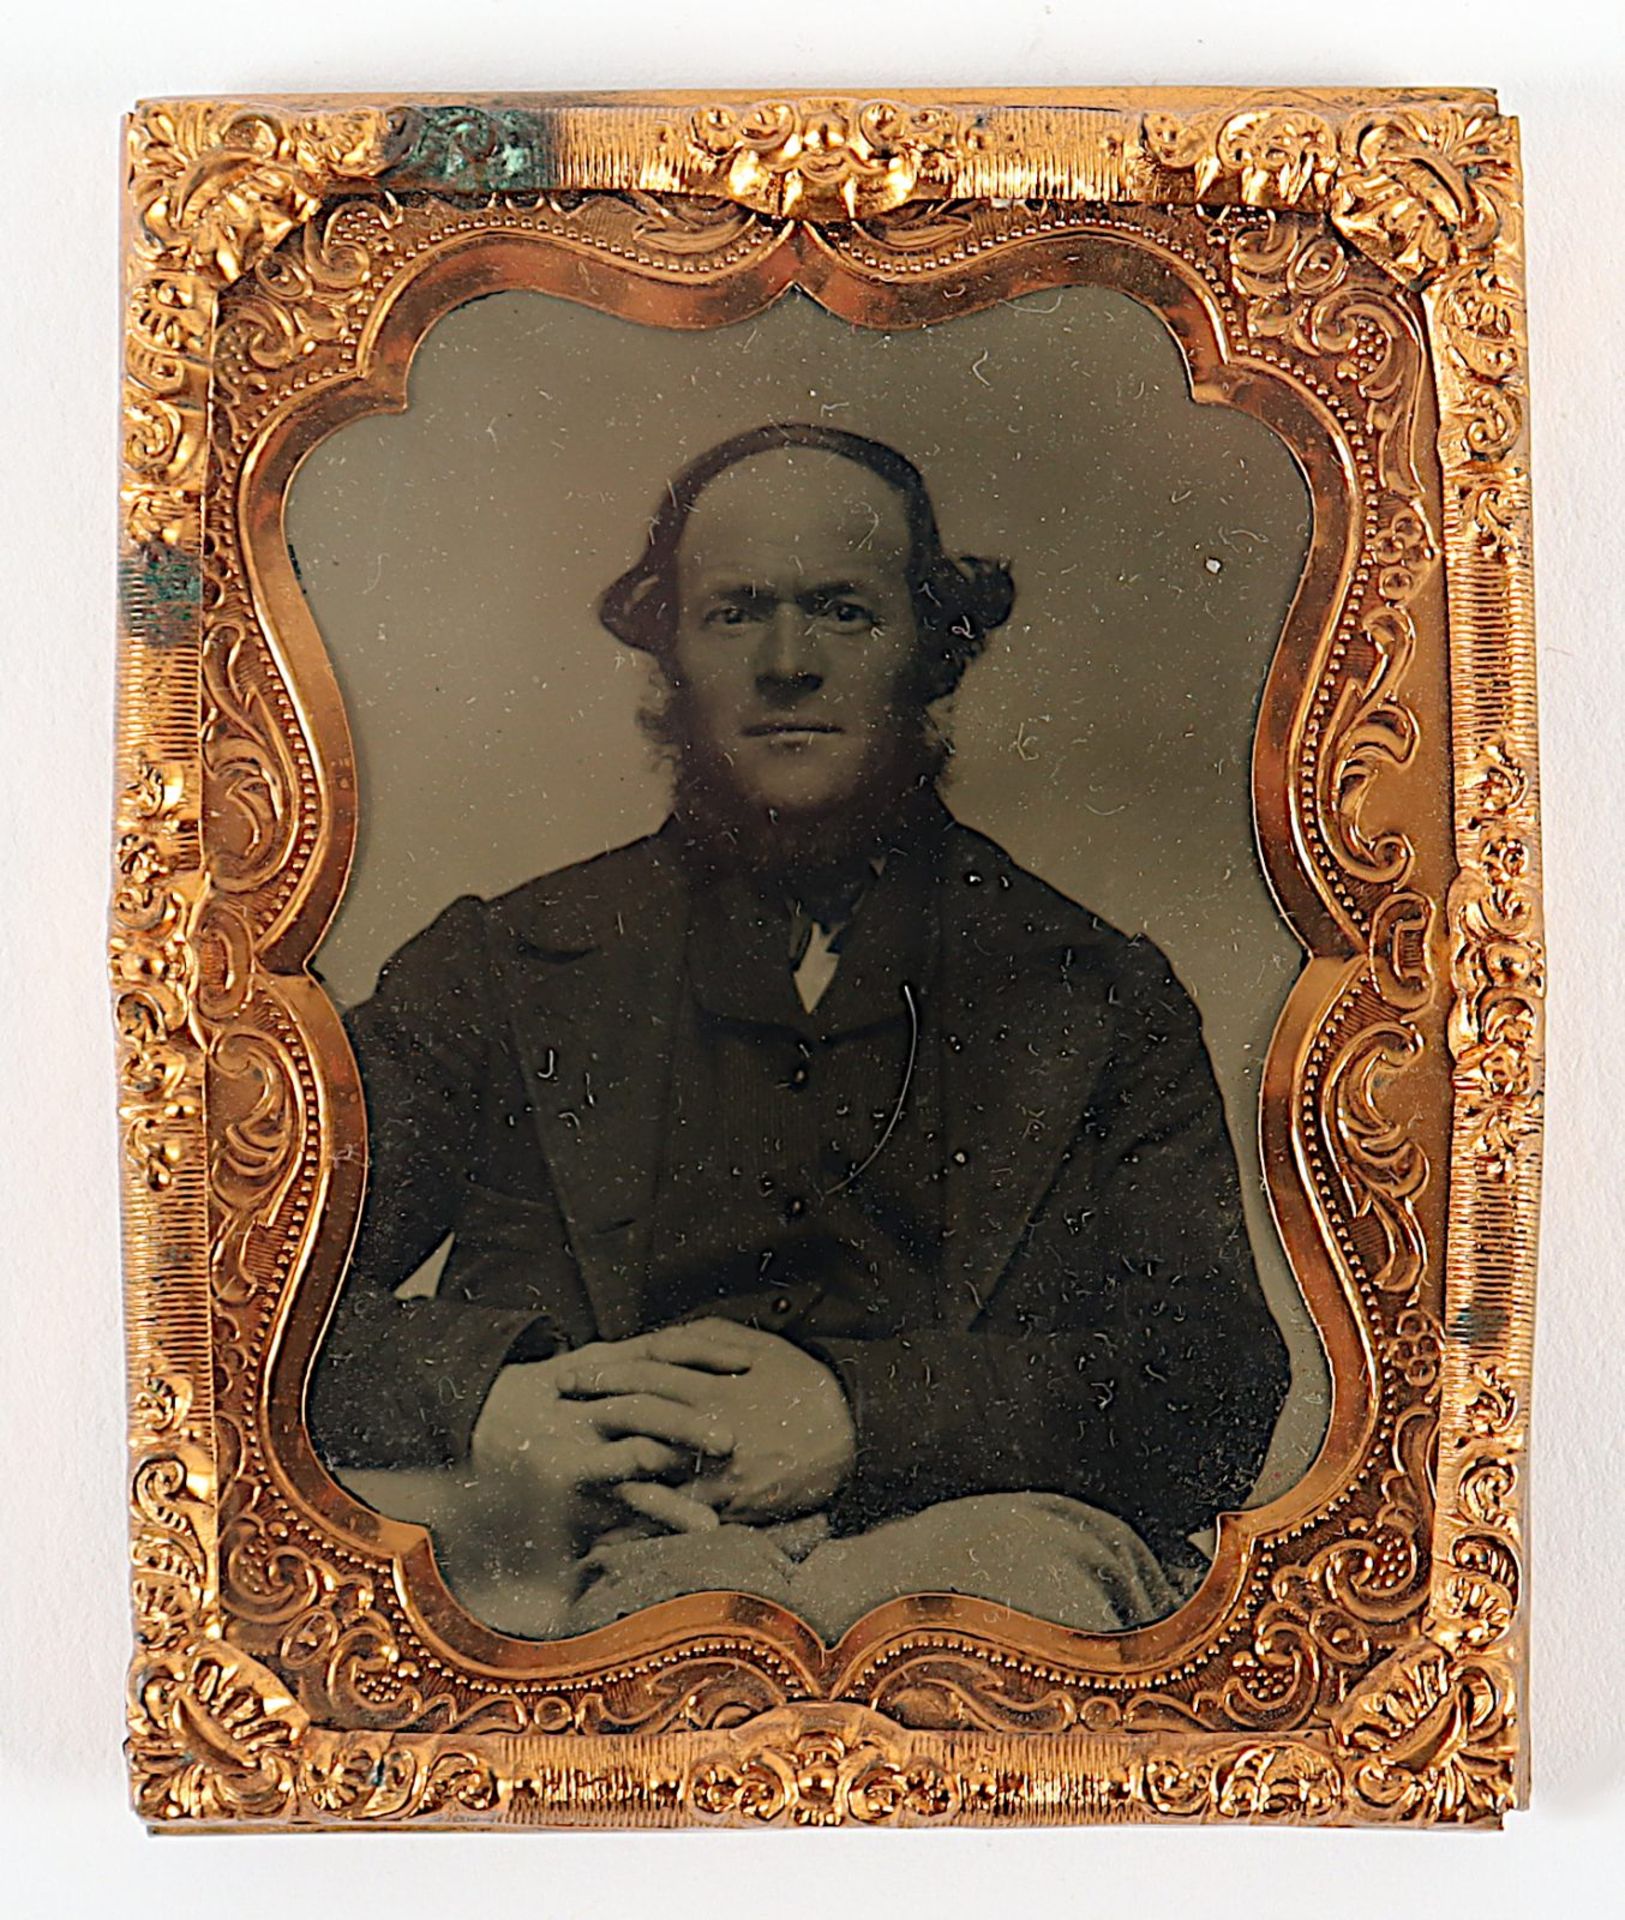 Frühe Fotografie, um 1840 